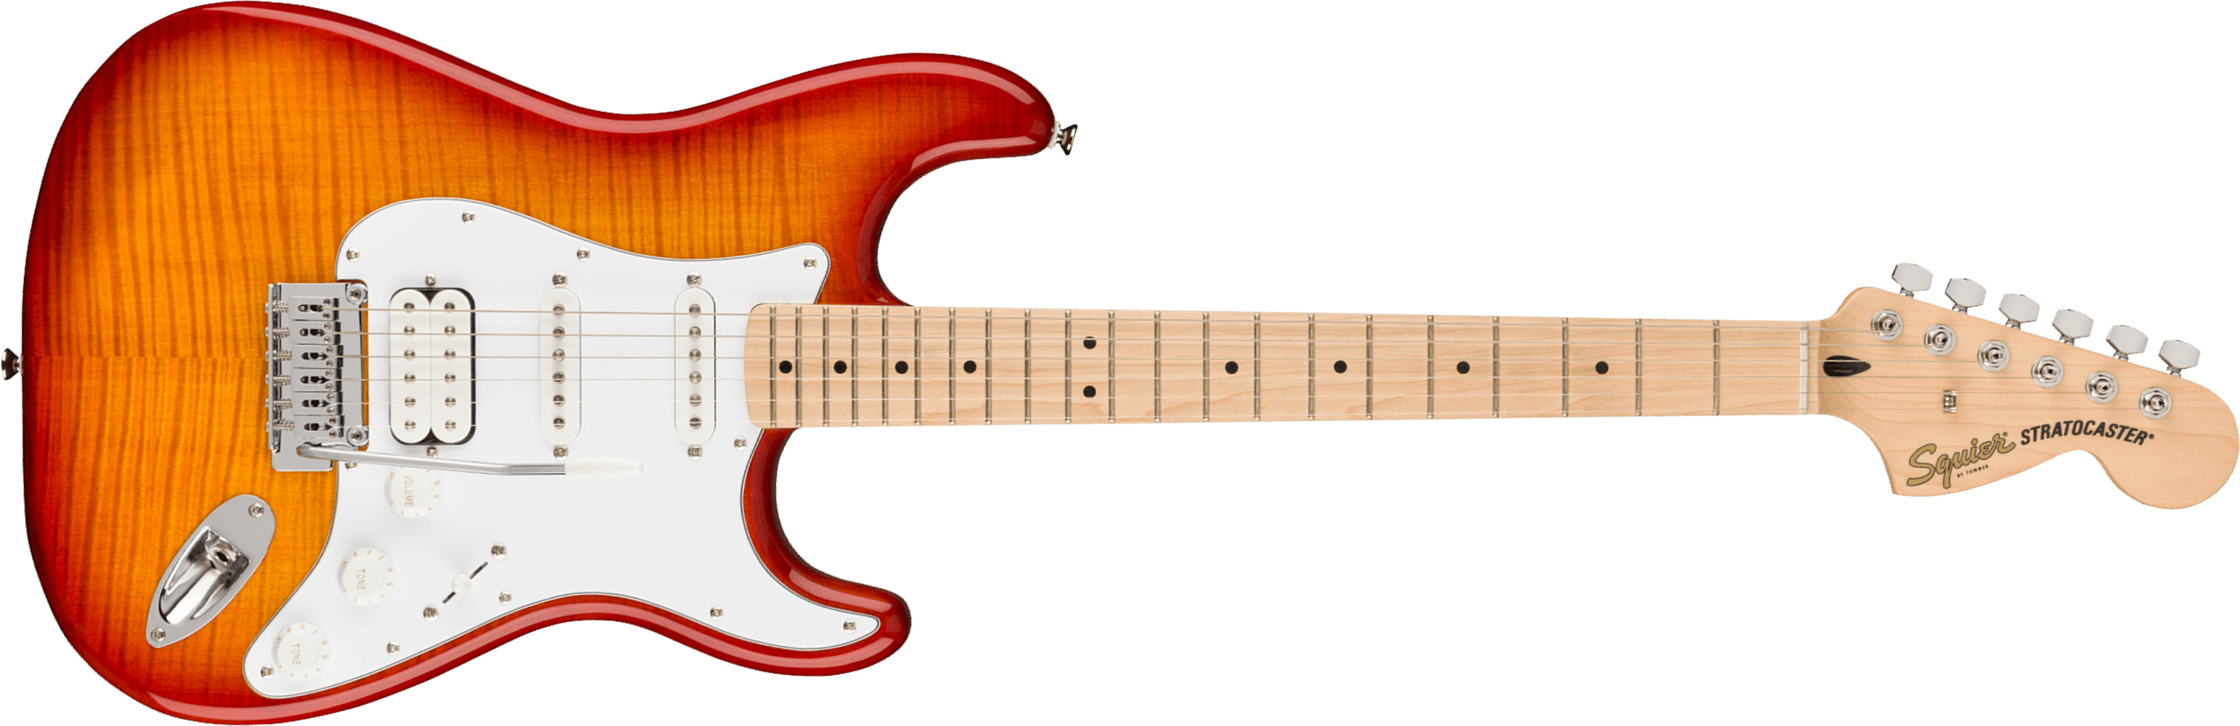 Squier Strat Affinity 2021 Fmt Hss Trem Mn - Sienna Sunburst - Elektrische gitaar in Str-vorm - Main picture